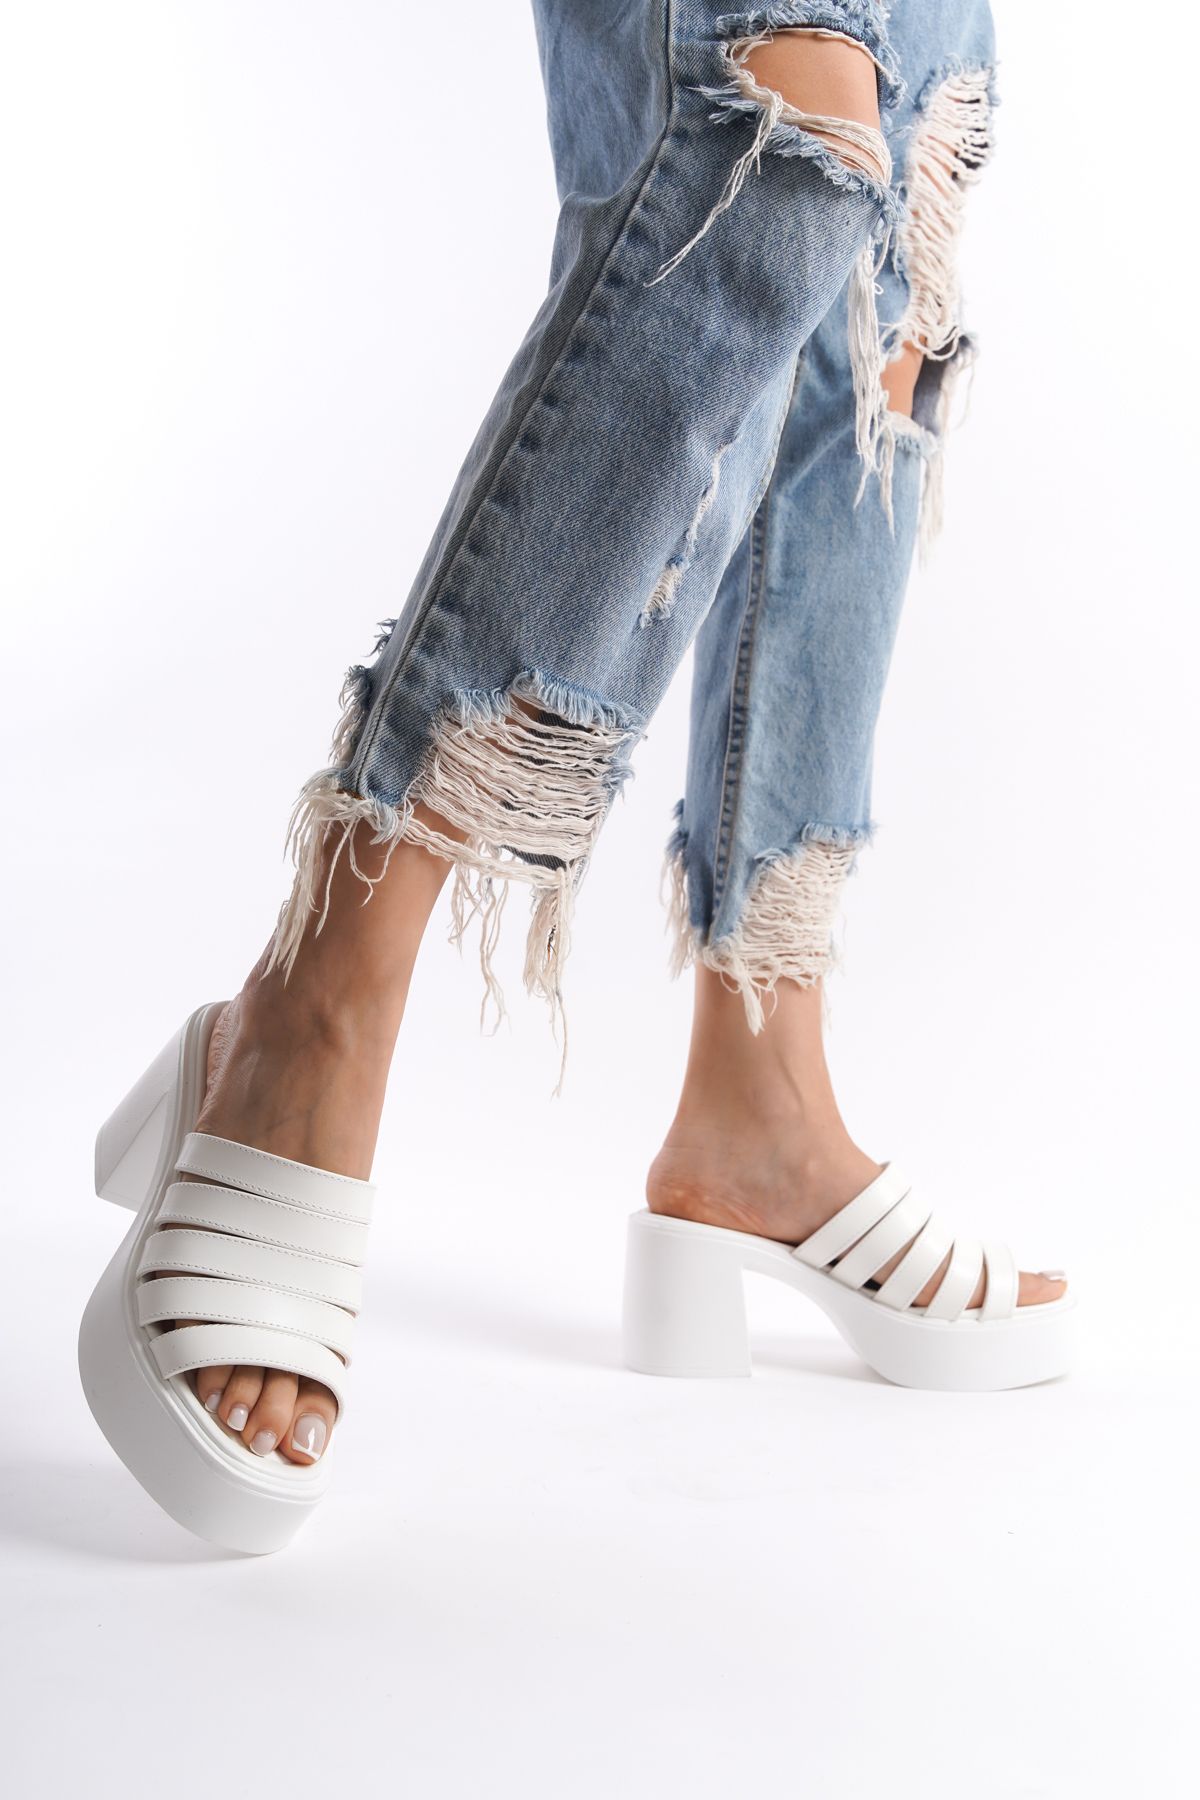 Limeo Beyaz Yüksek Dolgu Topuklu Suni Deri Beş İnce Şeritli Önü Açık Yazlık Kadın Terlik Sandalet